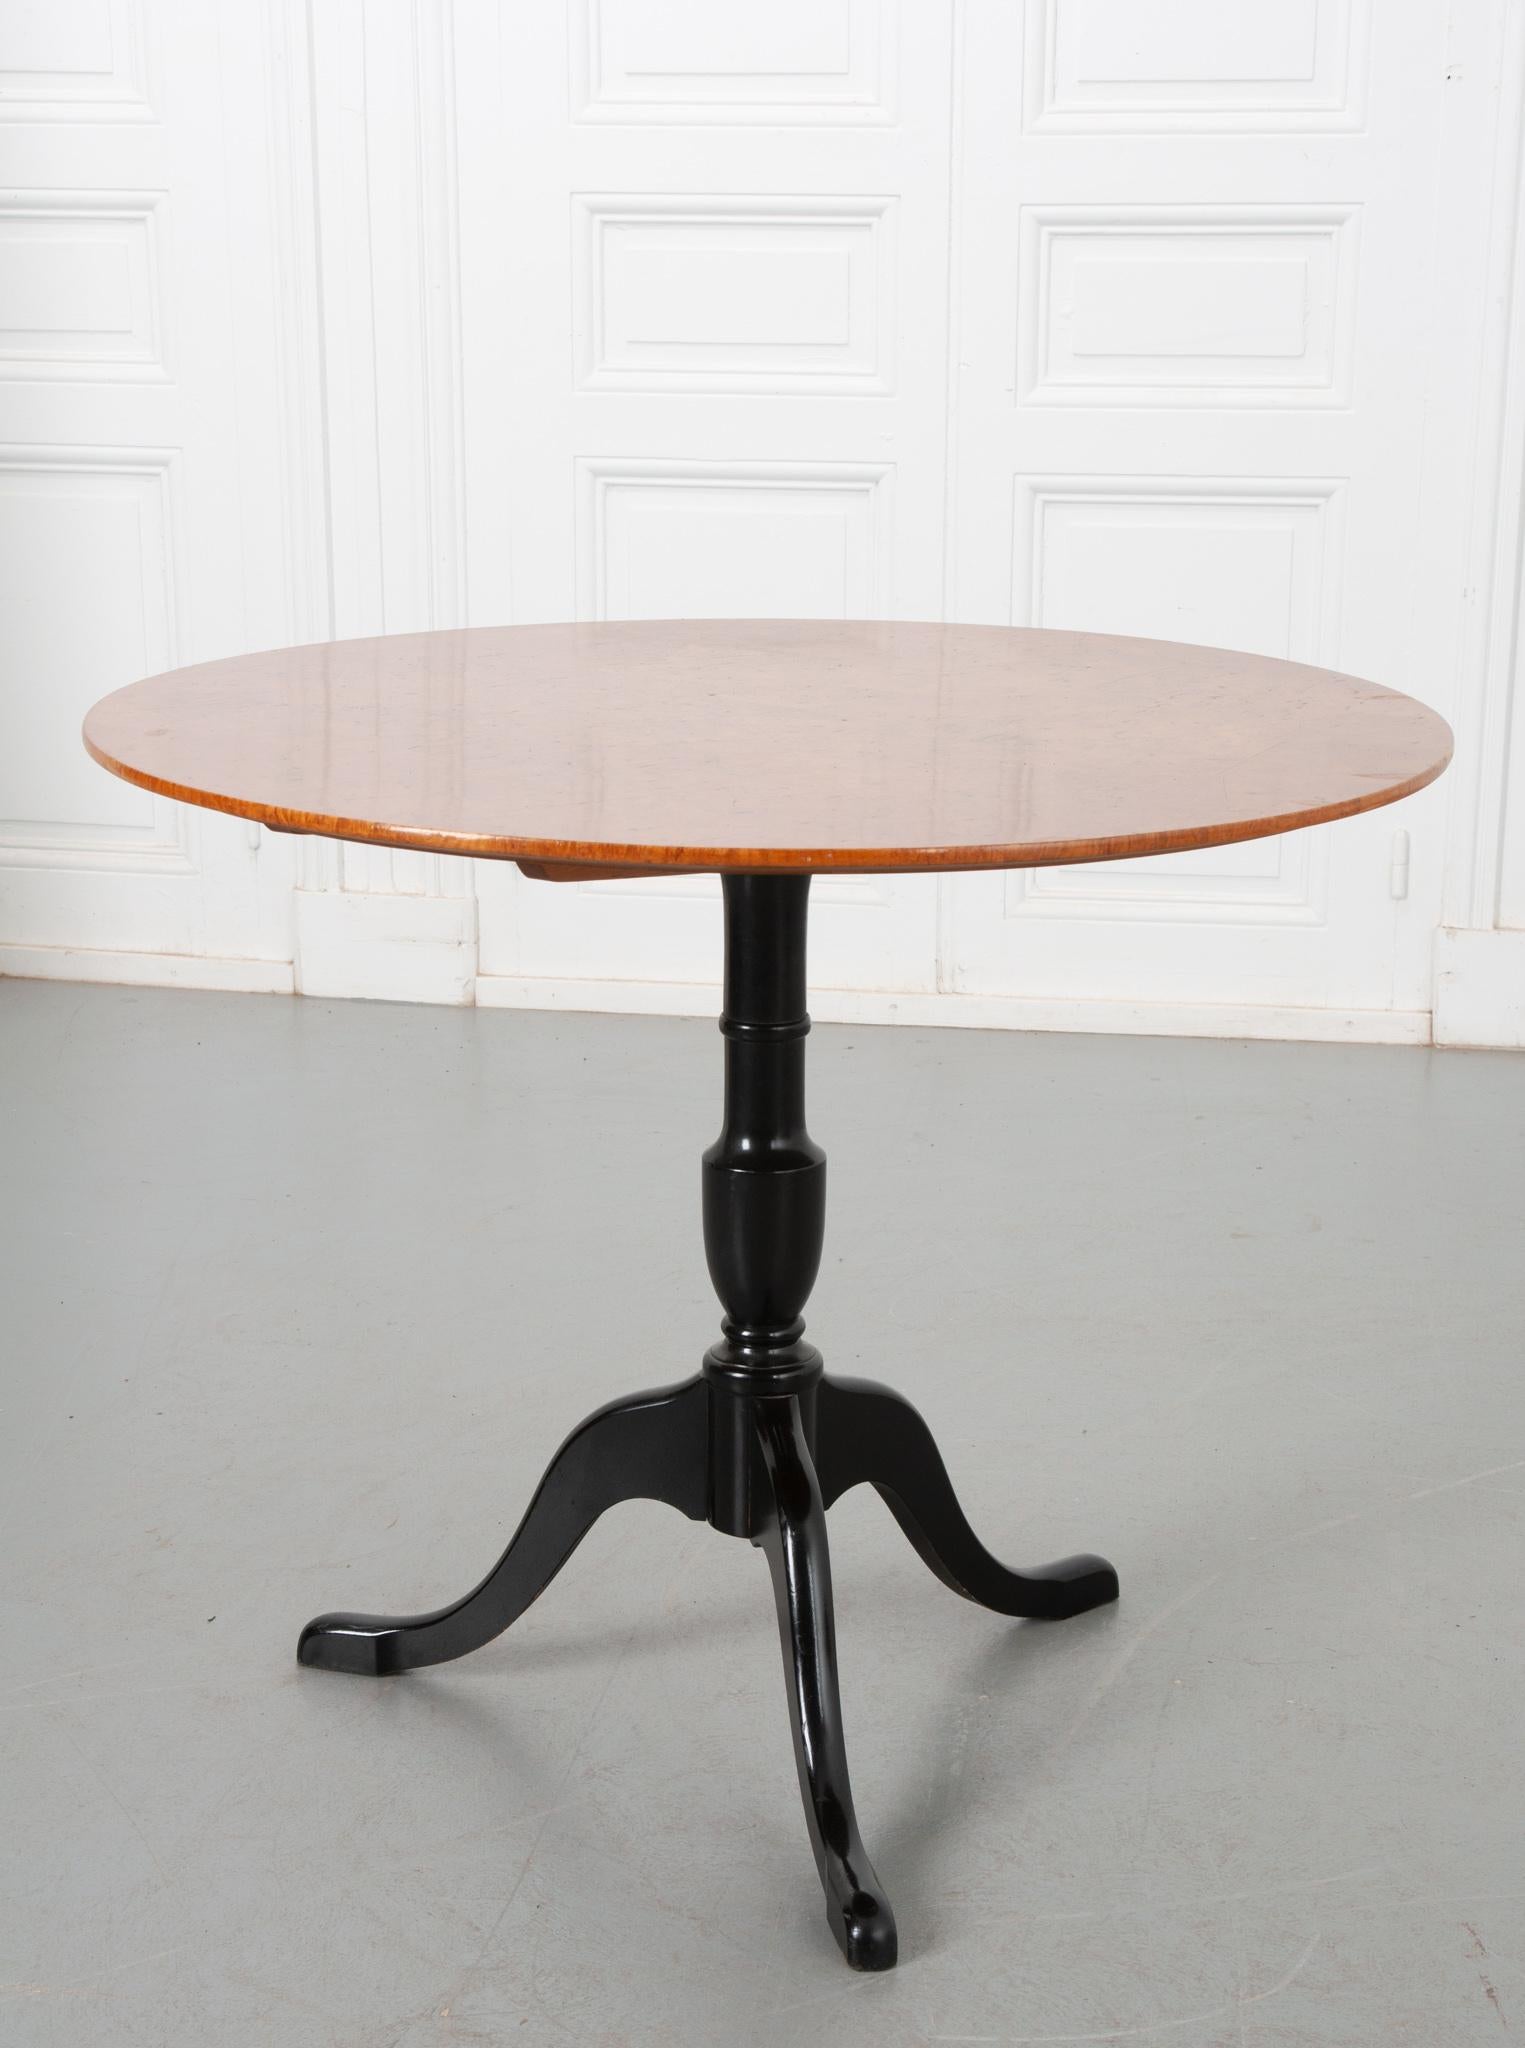 Ein auffälliger kippbarer Tisch aus Schweden, um 1900. Die Platte ist aus lebendiger Birke gefertigt, die einen schönen Kontrast zum Ebenholzsockel bildet. Dieser Tisch lässt sich bei Nichtgebrauch dank des Kippmechanismus, der es ermöglicht, die